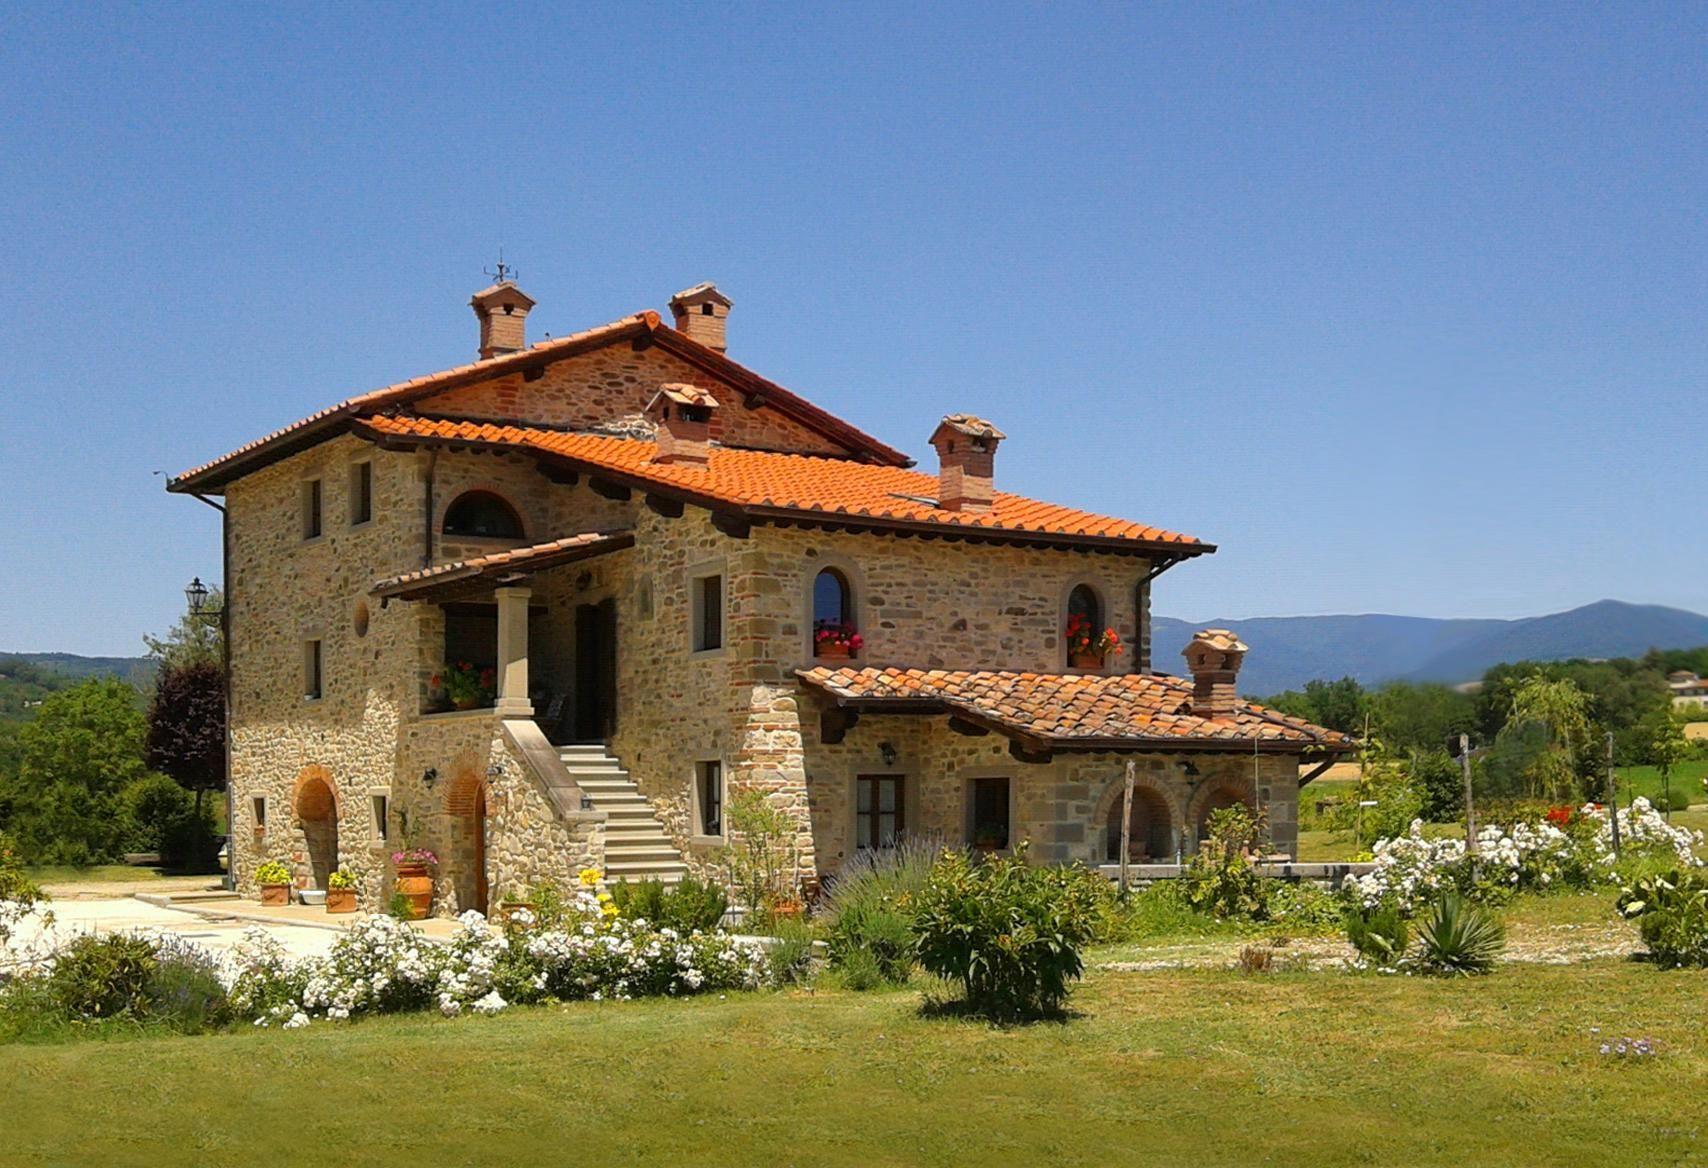 Ferienwohnung in einem toskanischen Landhaus, mit  Ferienhaus in Europa